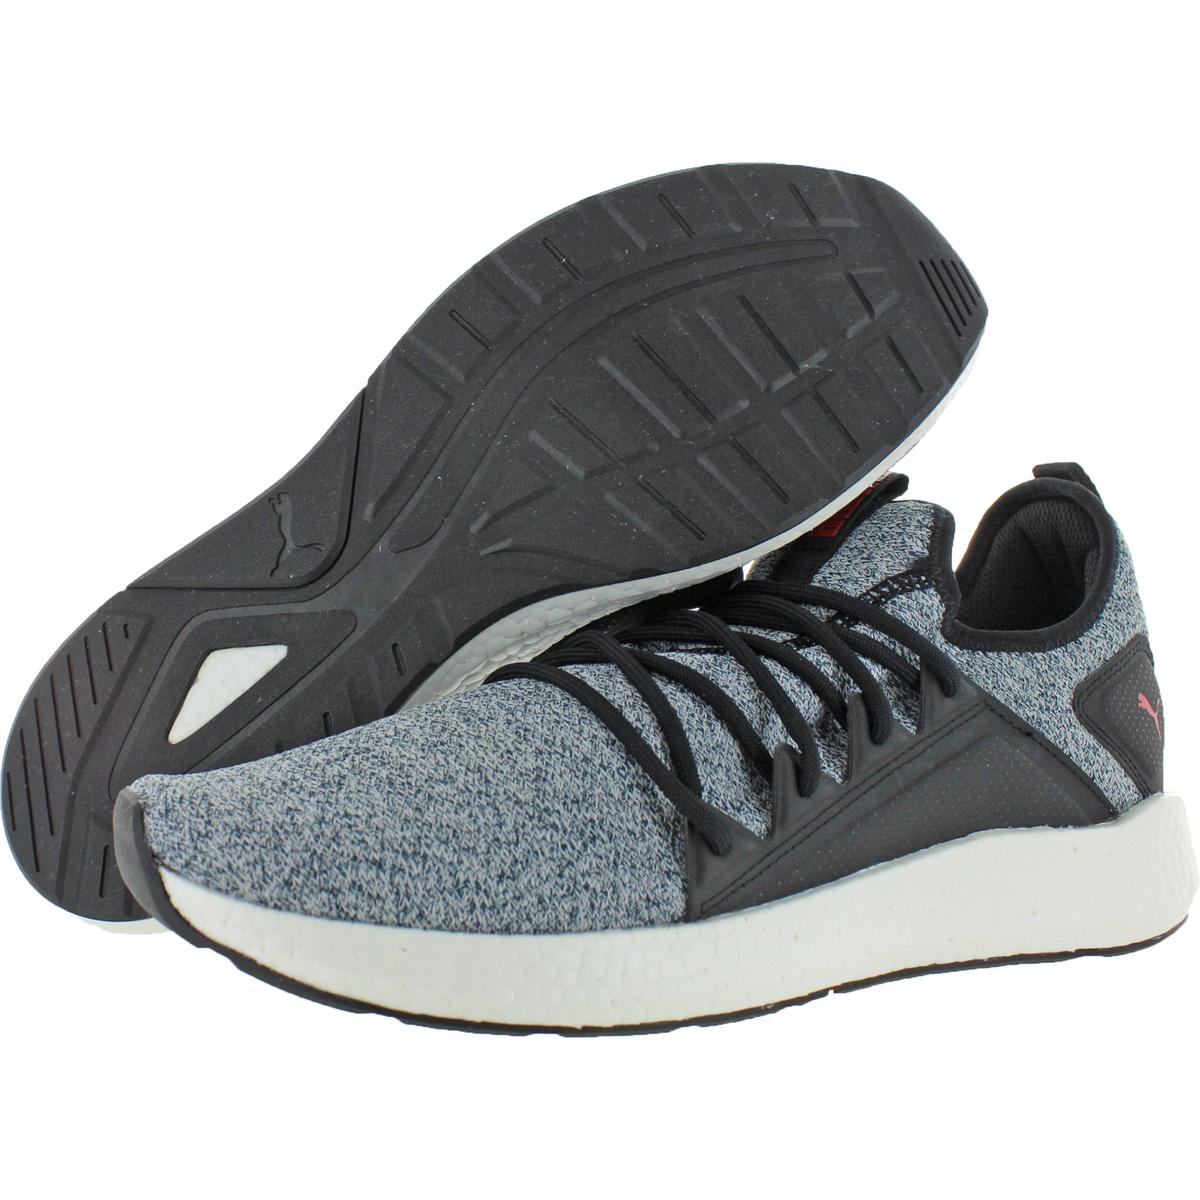 Puma Mens NRGY Neko Soft Foam + Mid Top Running Shoes